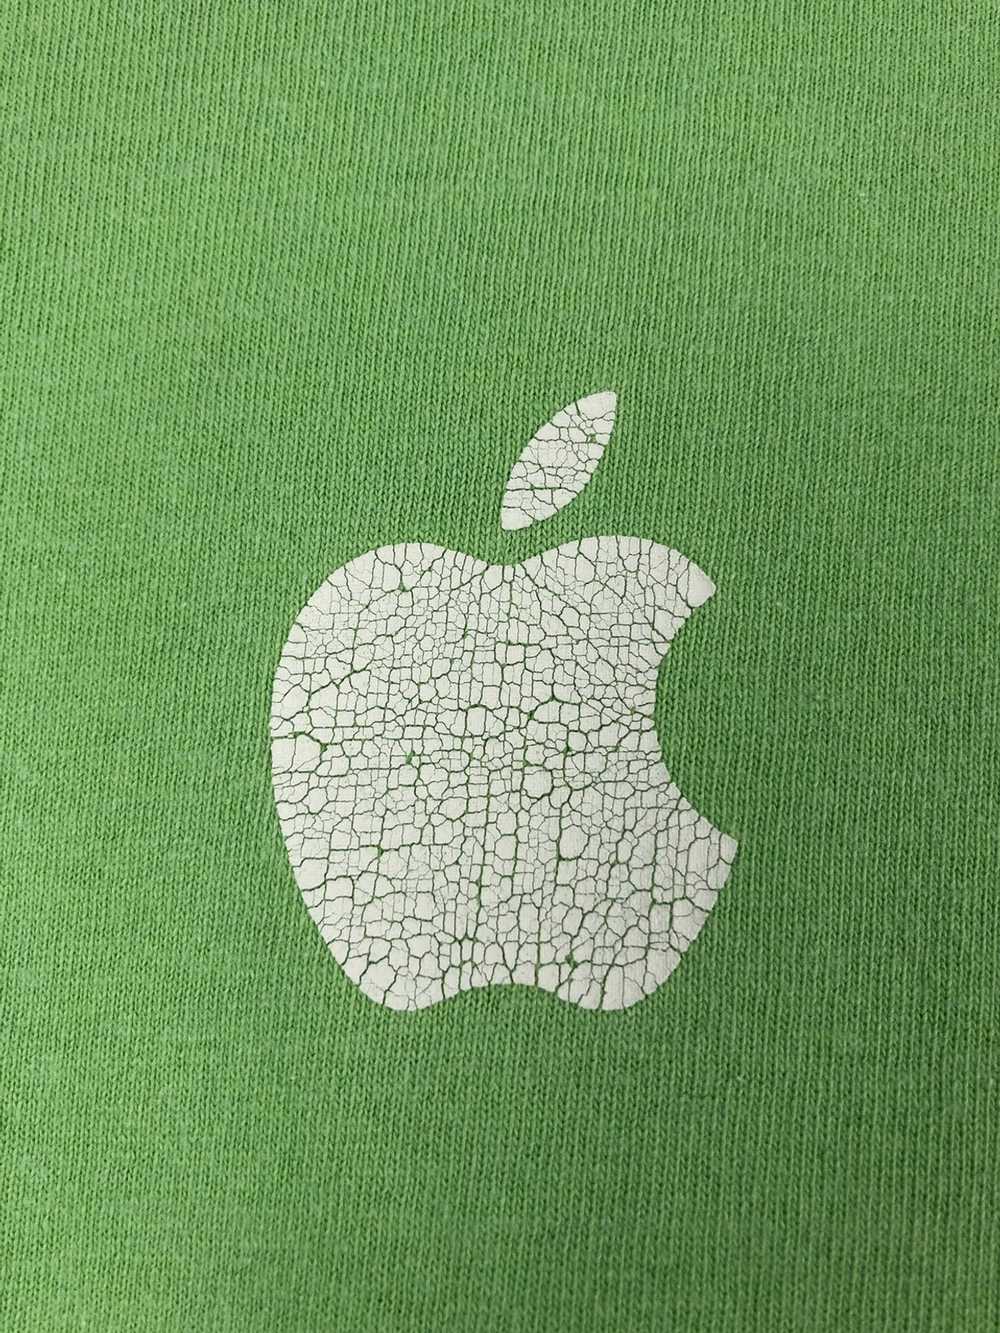 Apple Vintage Apple T-Shirt - image 4